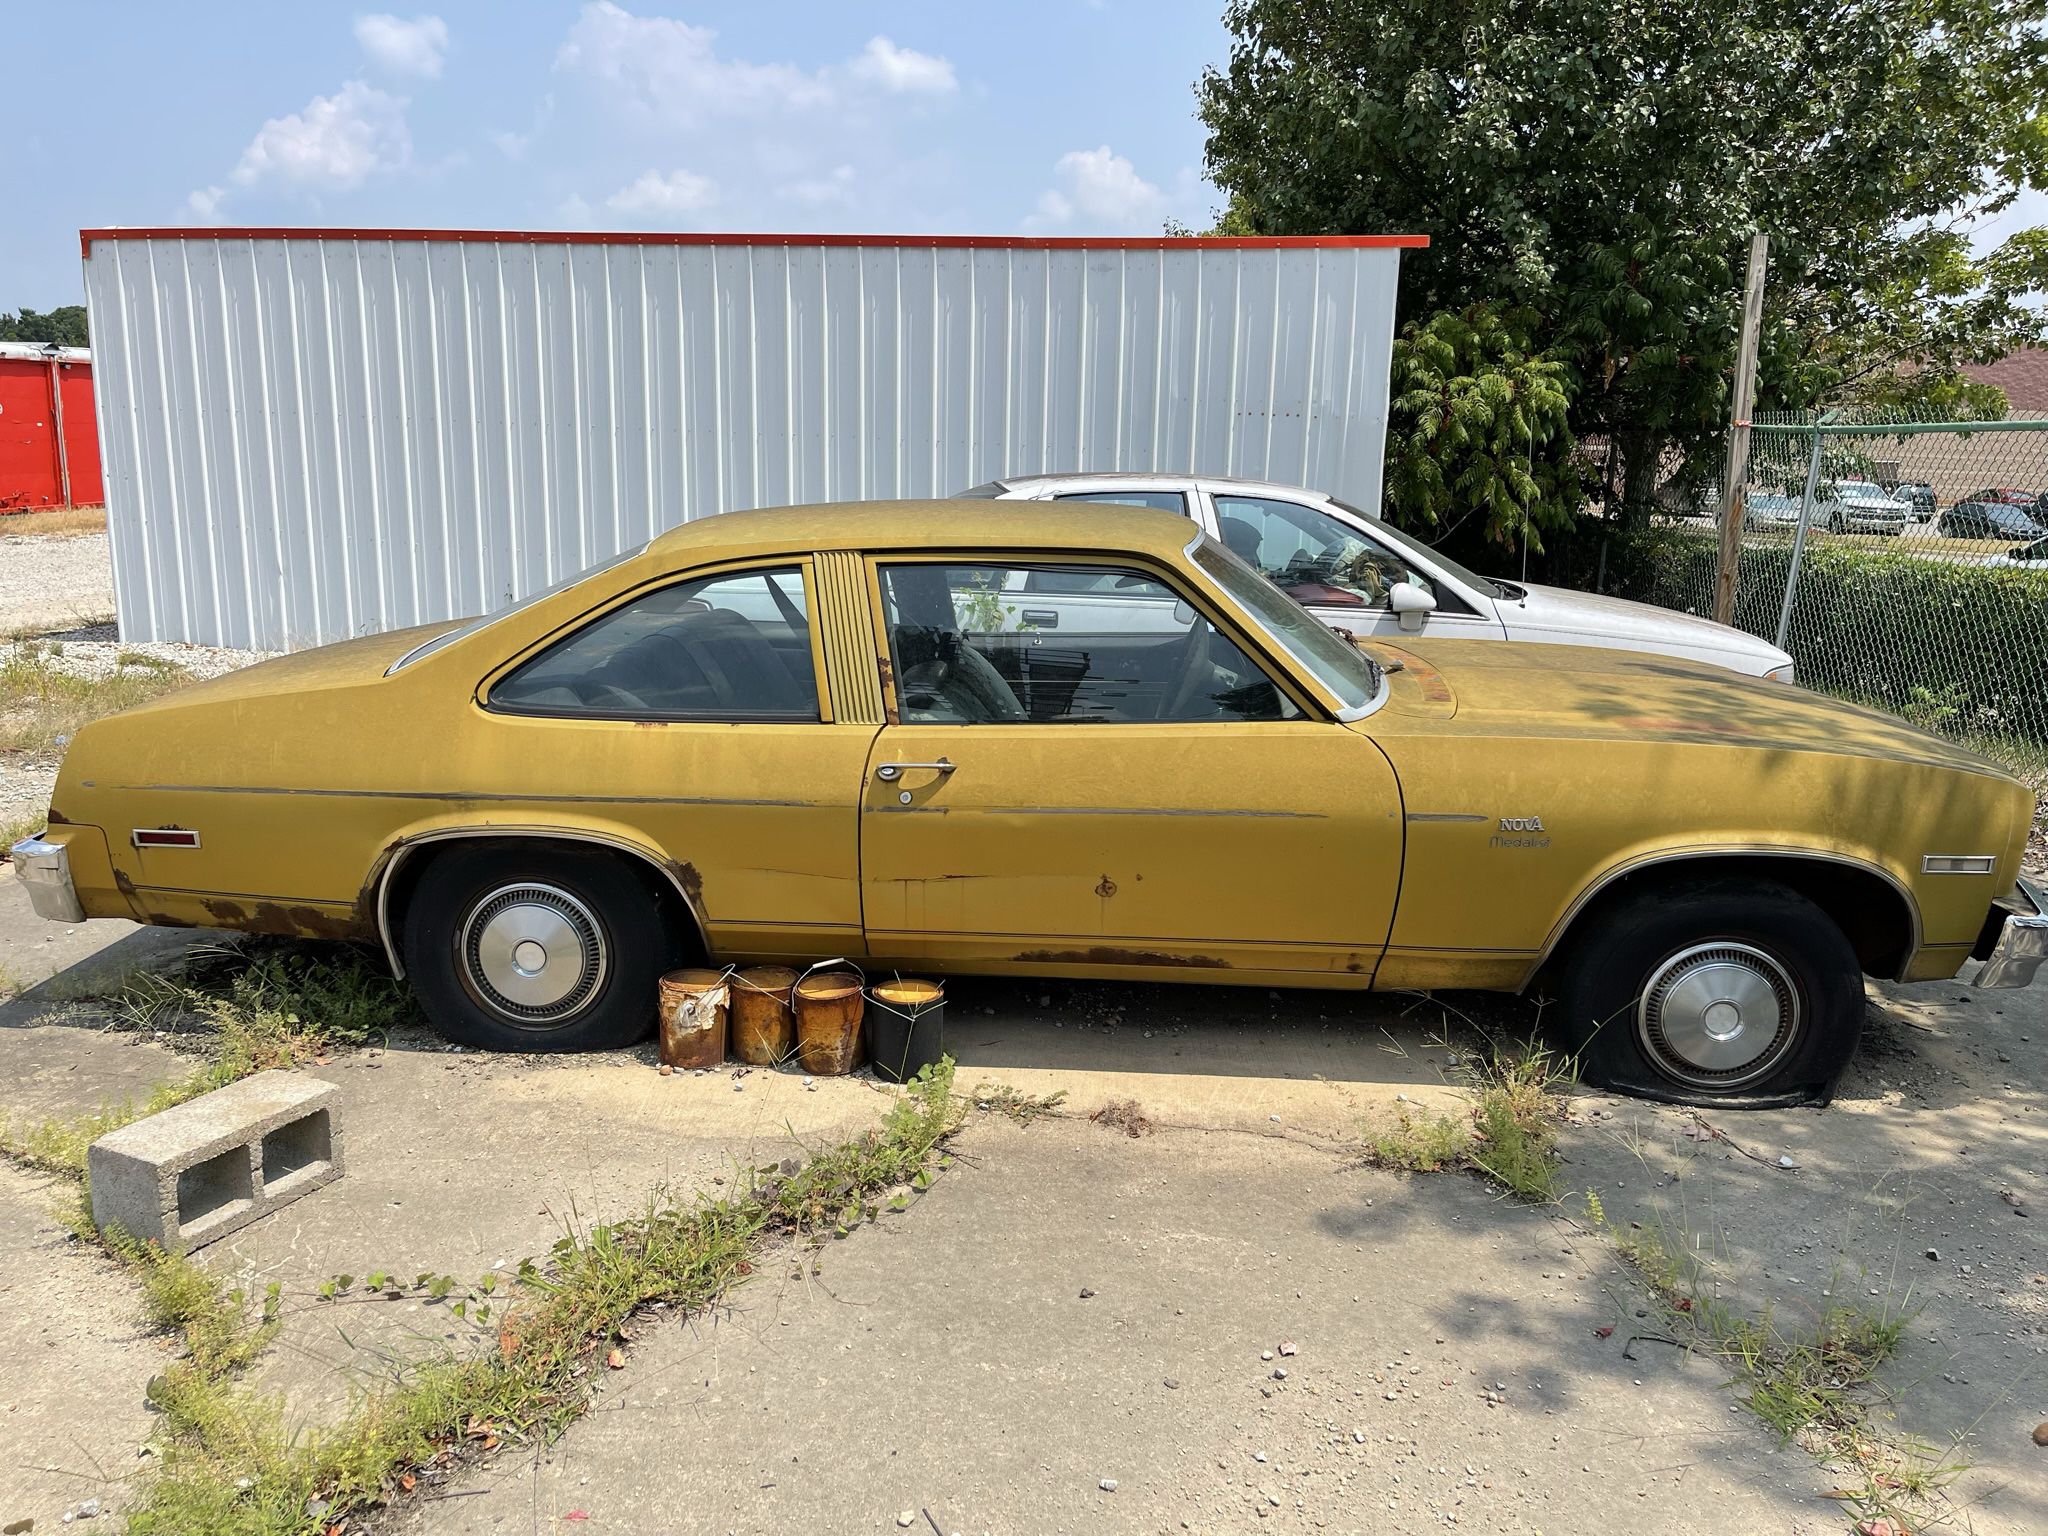 1976 Chevrolet Nova (location Arkansas)